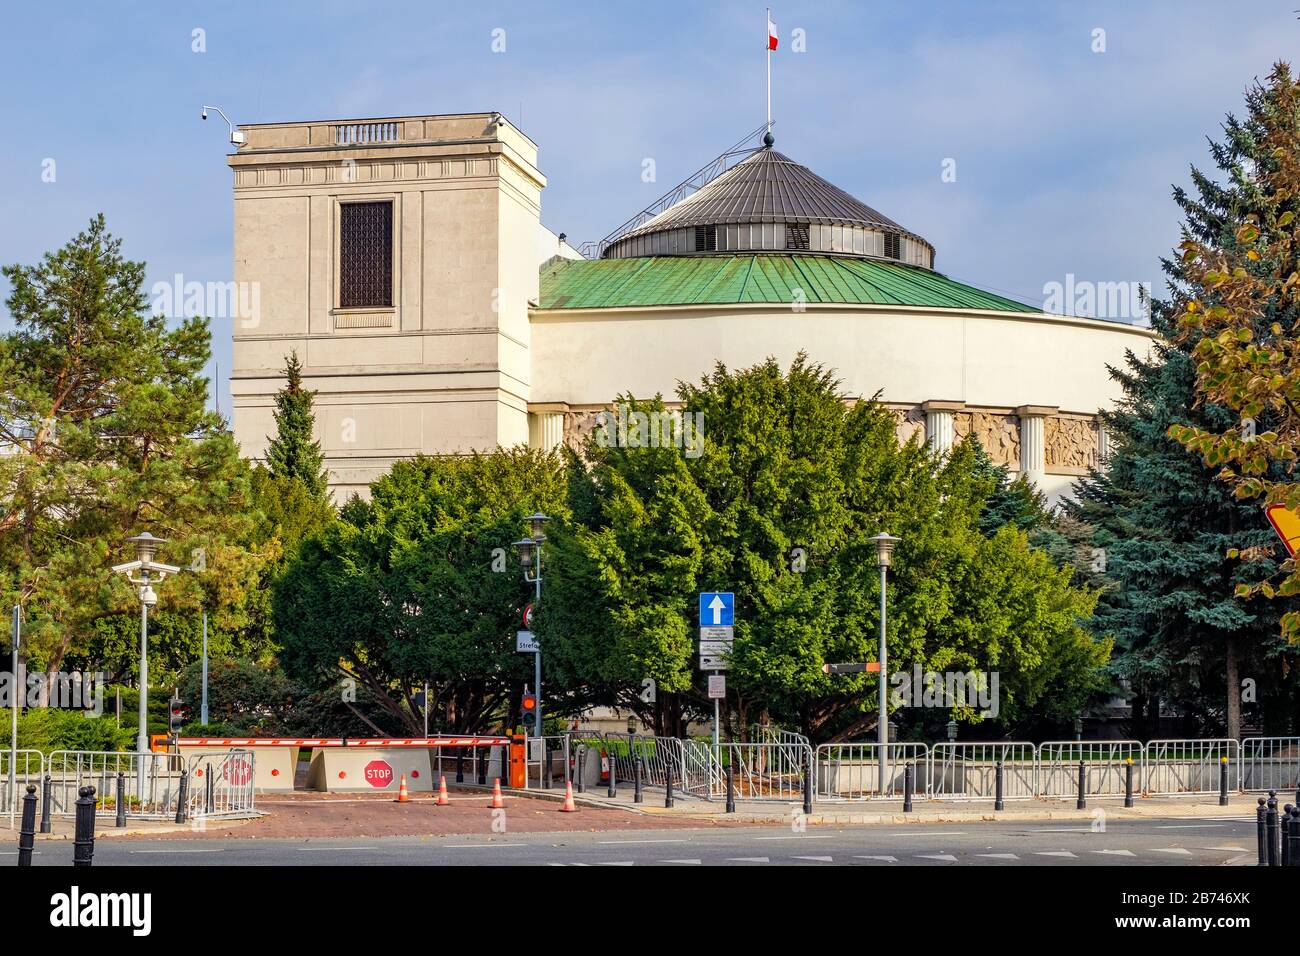 Varsovie, Mazovia / Pologne - 2019/10/26 : Sejm - Chambre basse du parlement polonais - siège de la rue Wiejska dans le centre historique de Varsovie Banque D'Images